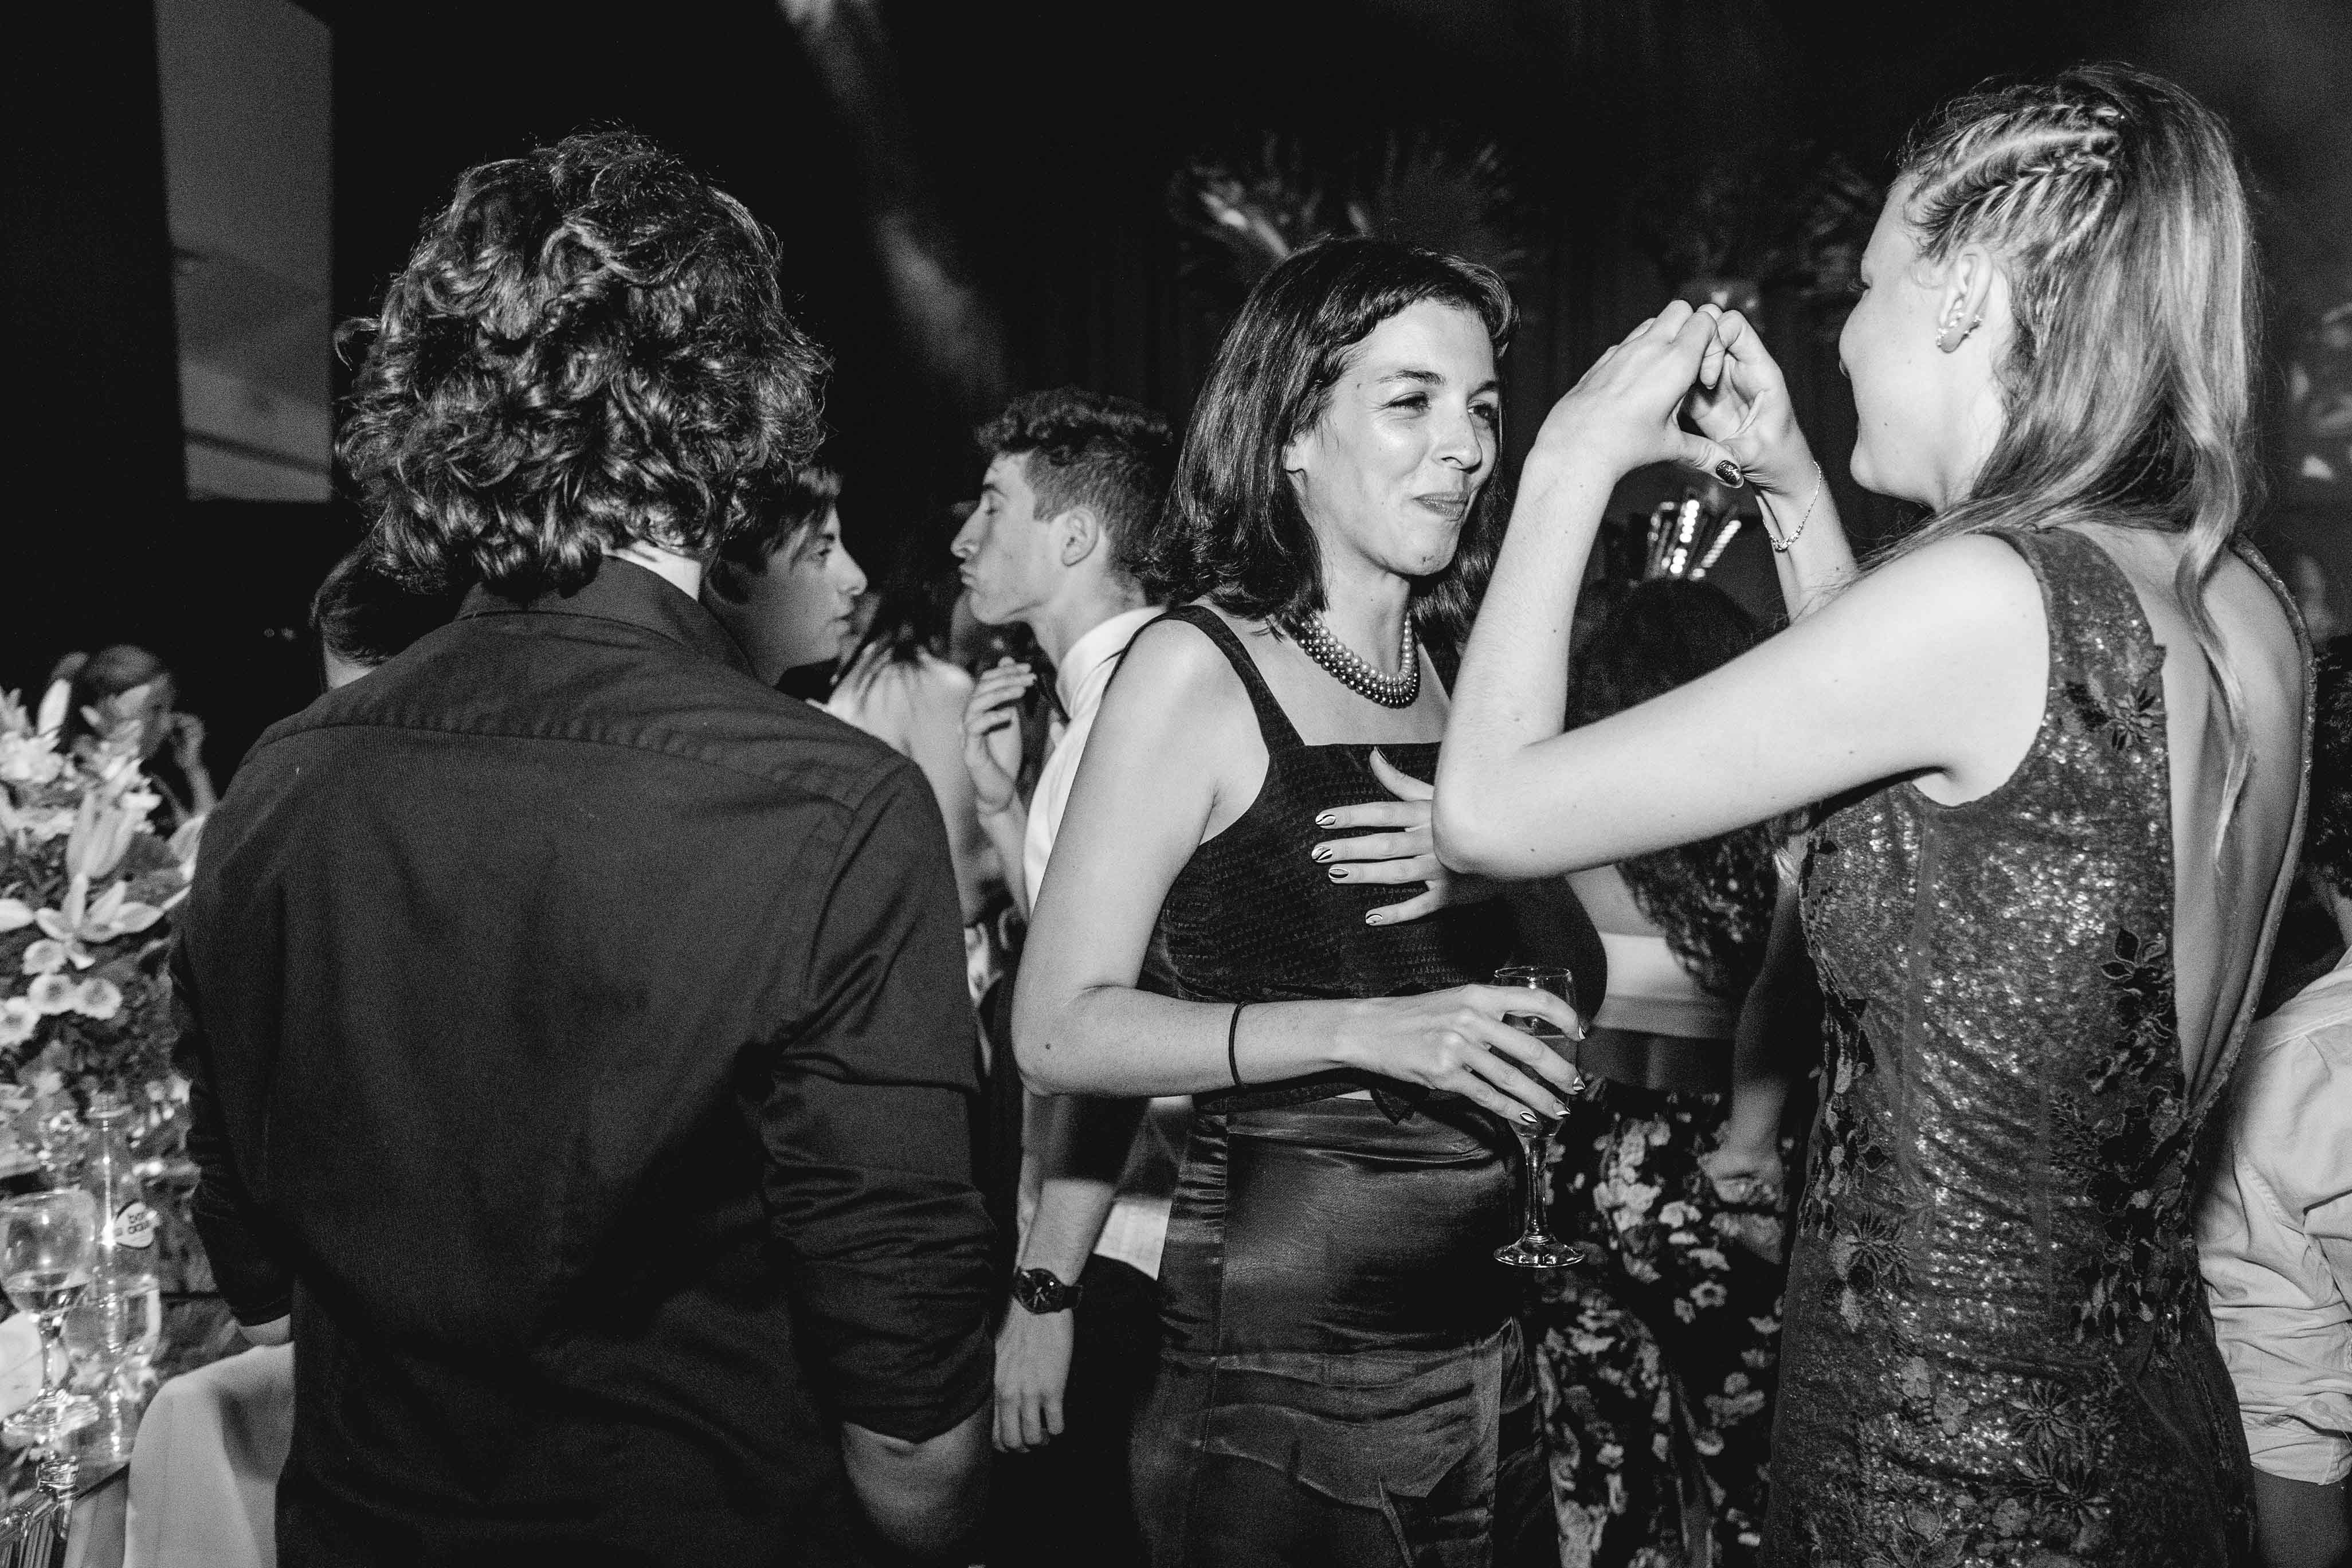 Fotos de la fiesta de quince de Ines en Rosario realizadas por Bucle Fotografias Flor Bosio y Caro Clerici.